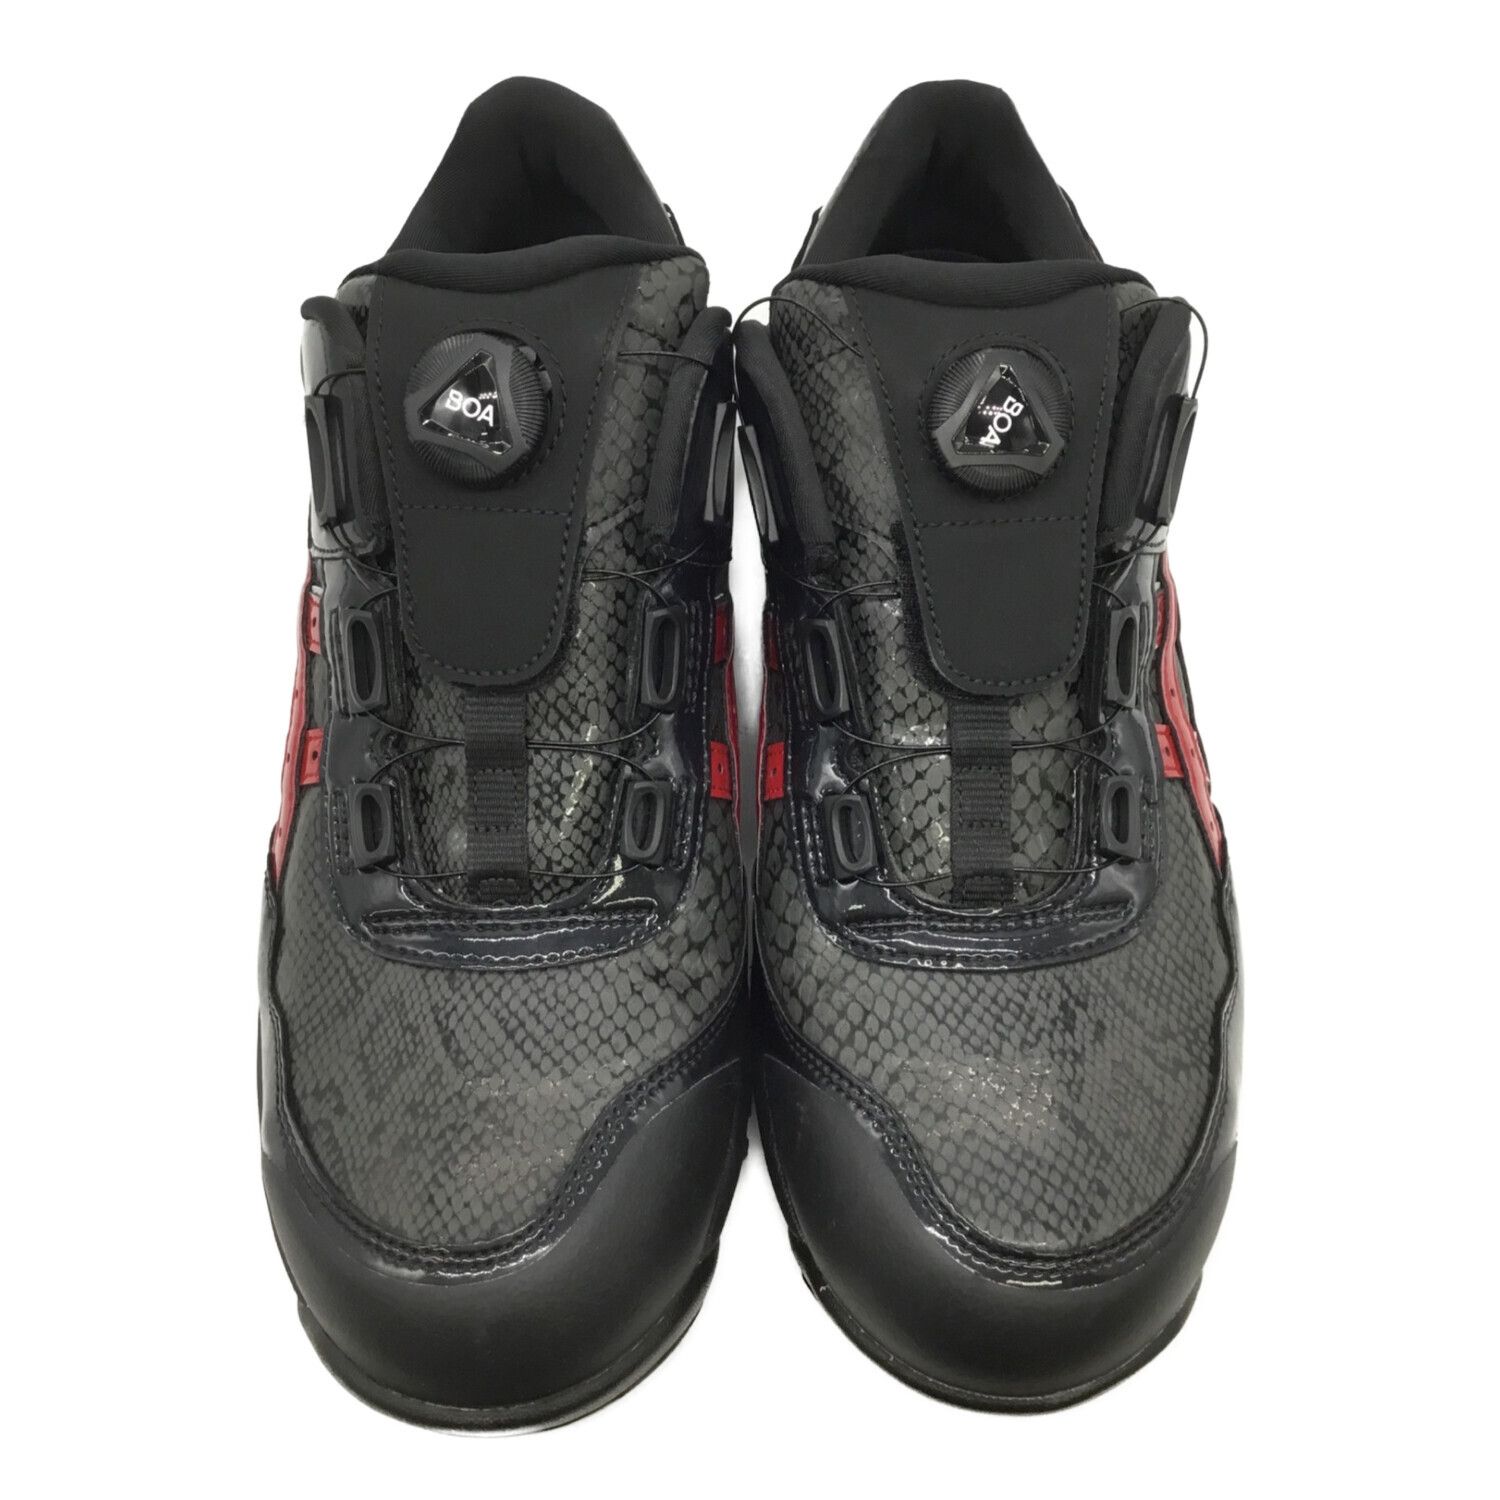 asics (アシックス) 安全靴 メンズ SIZE 27.5cm ブラック 1273A087-001 